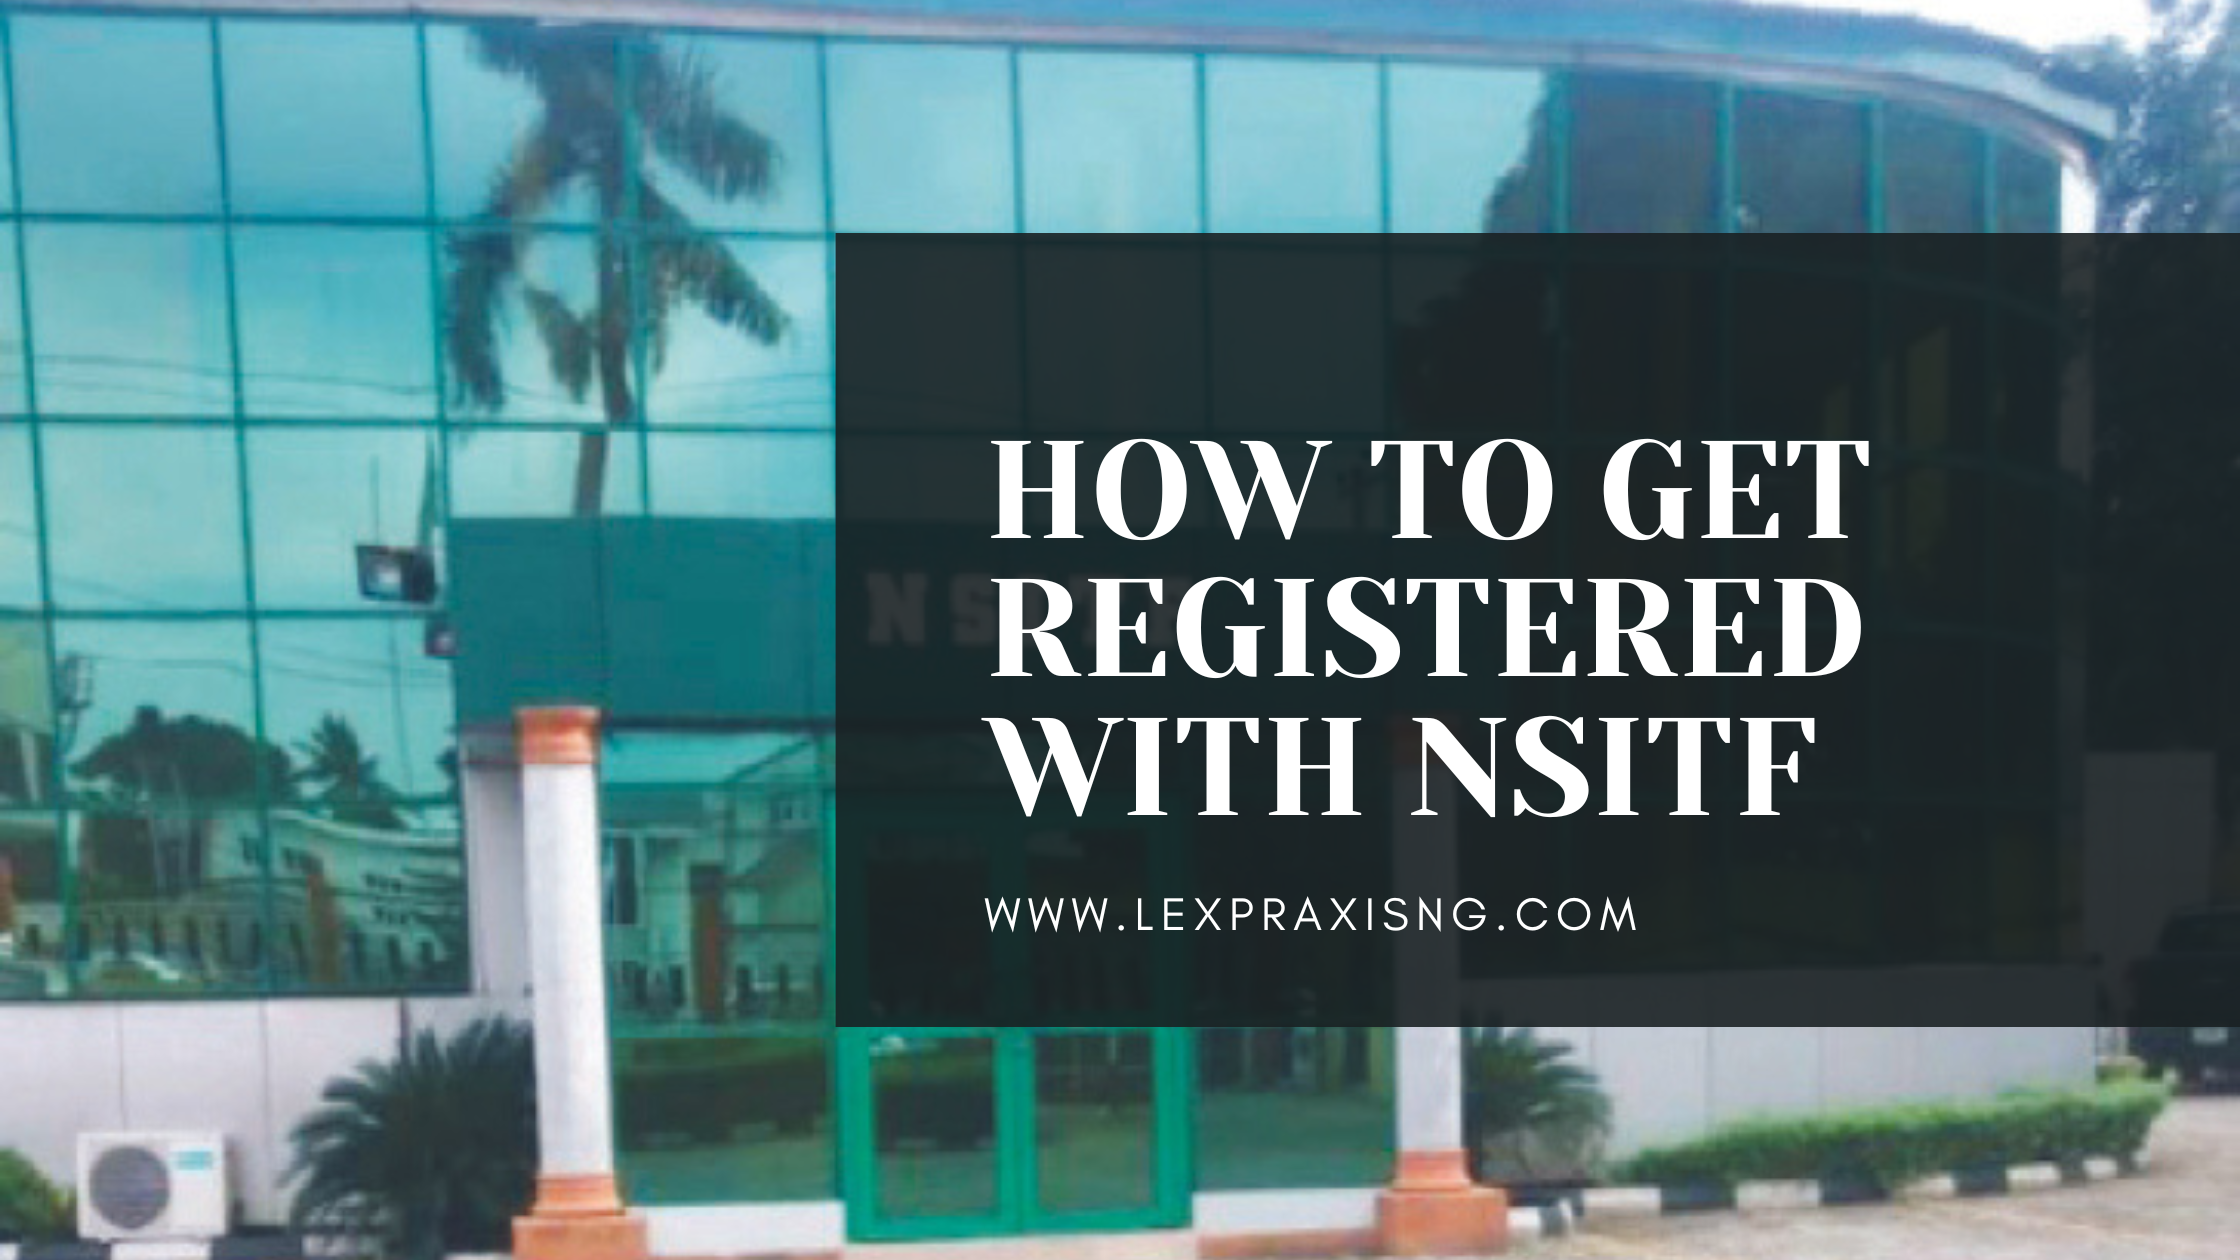 NSITF REGISTRATION: HOW TO GET REGISTERED